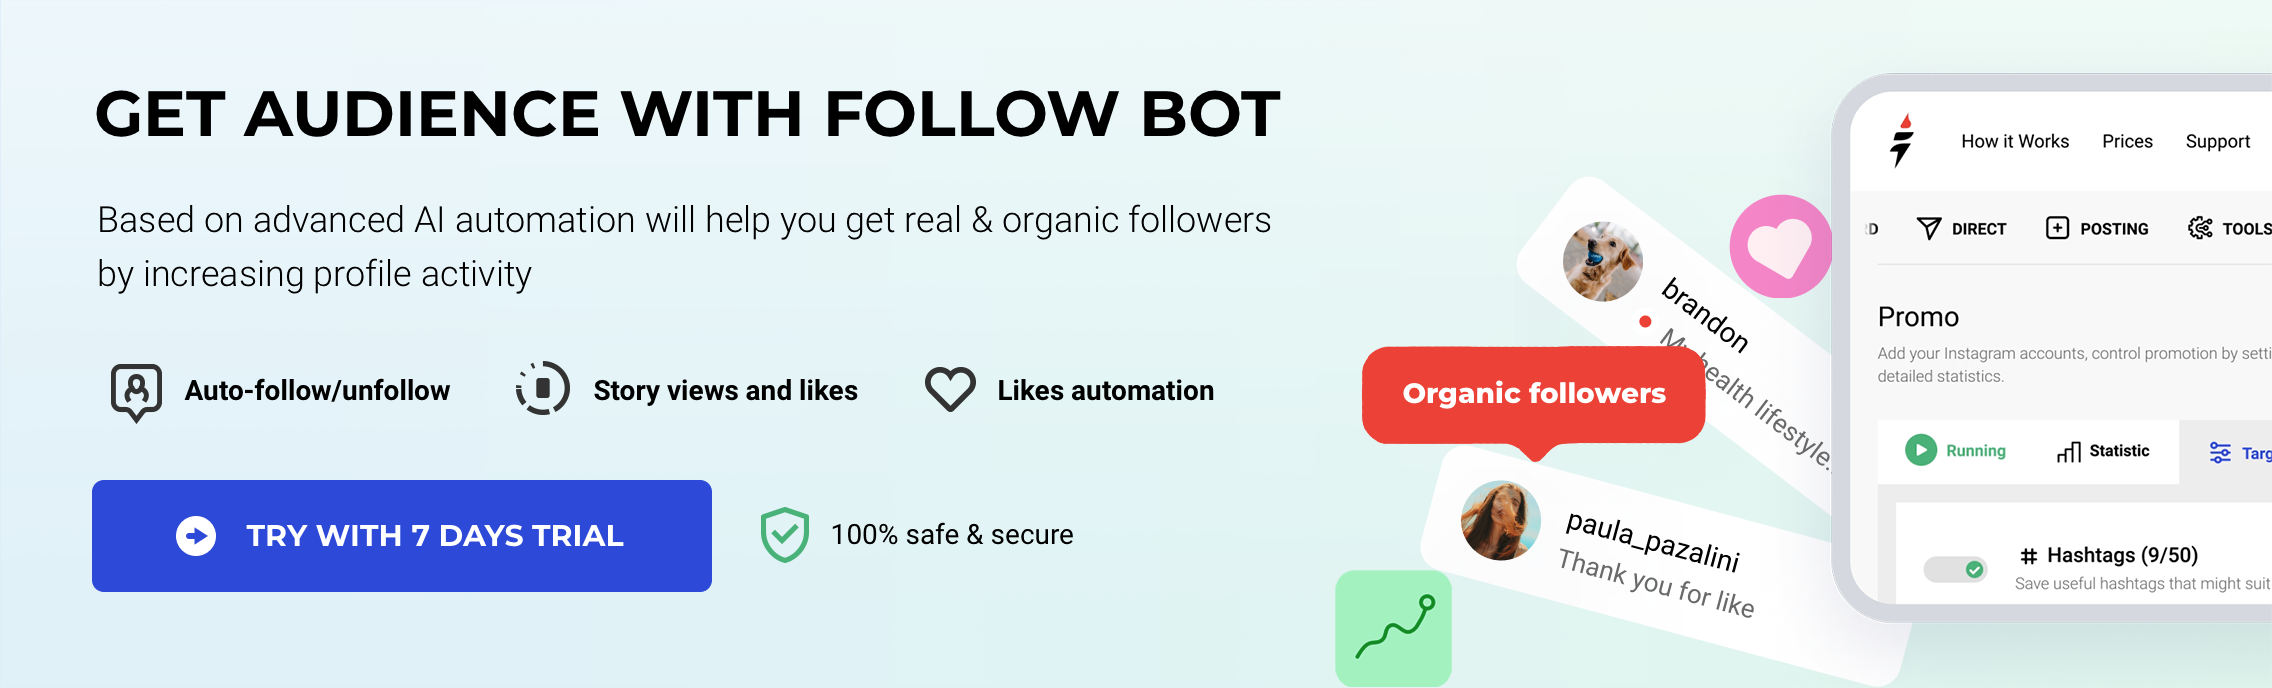 Get audience from follow bot Desktop